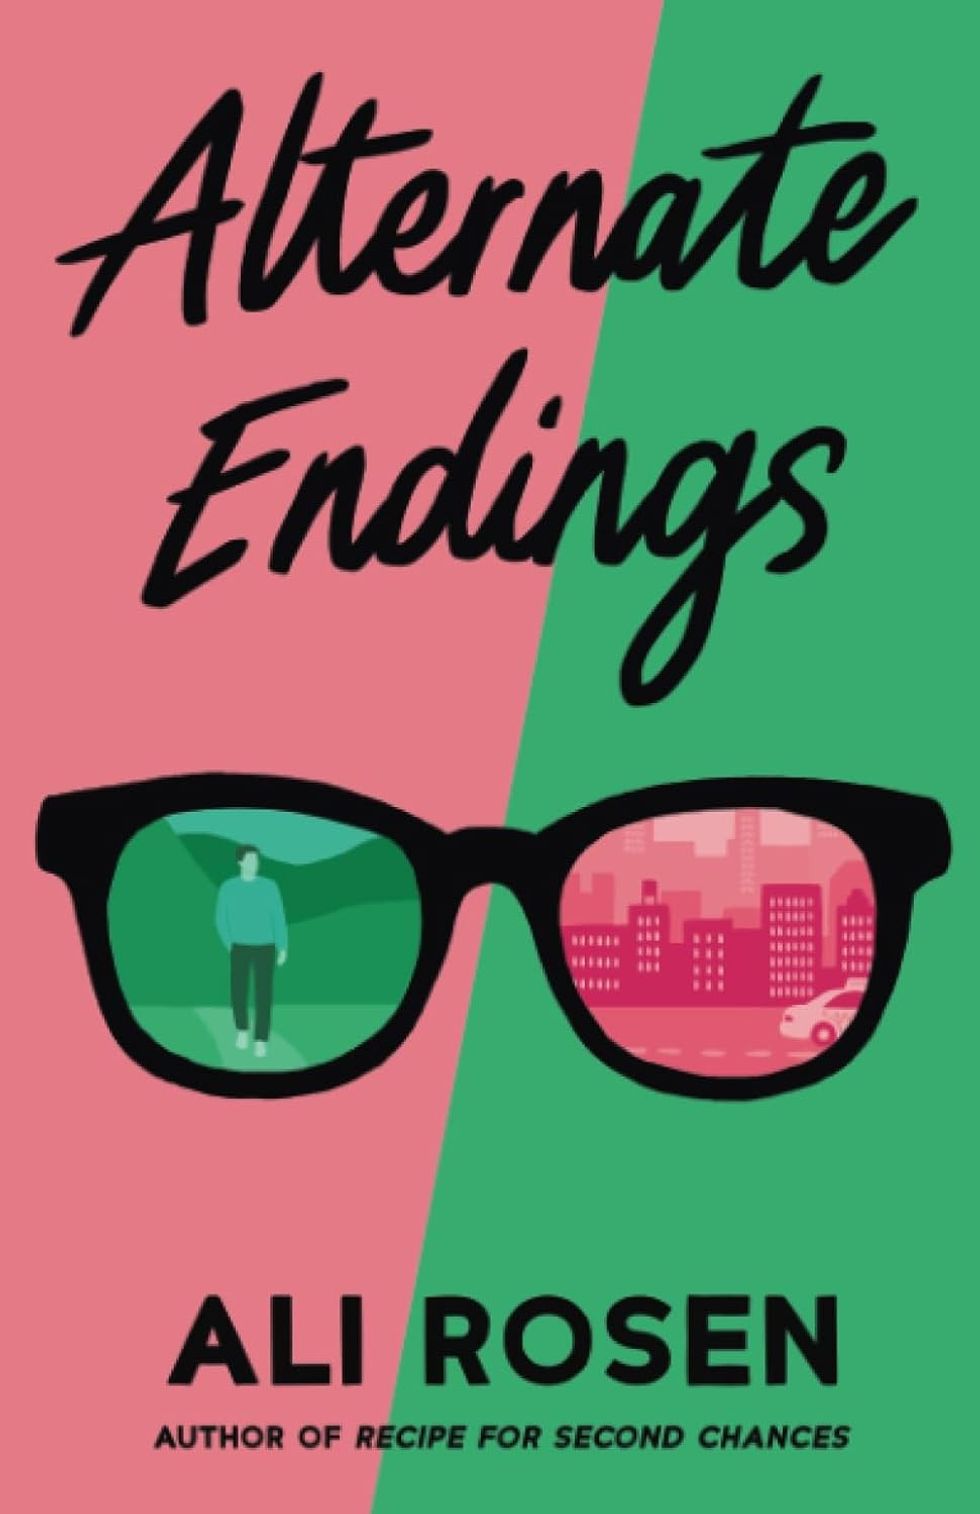 "Alternate Endings" by Ali Rosen